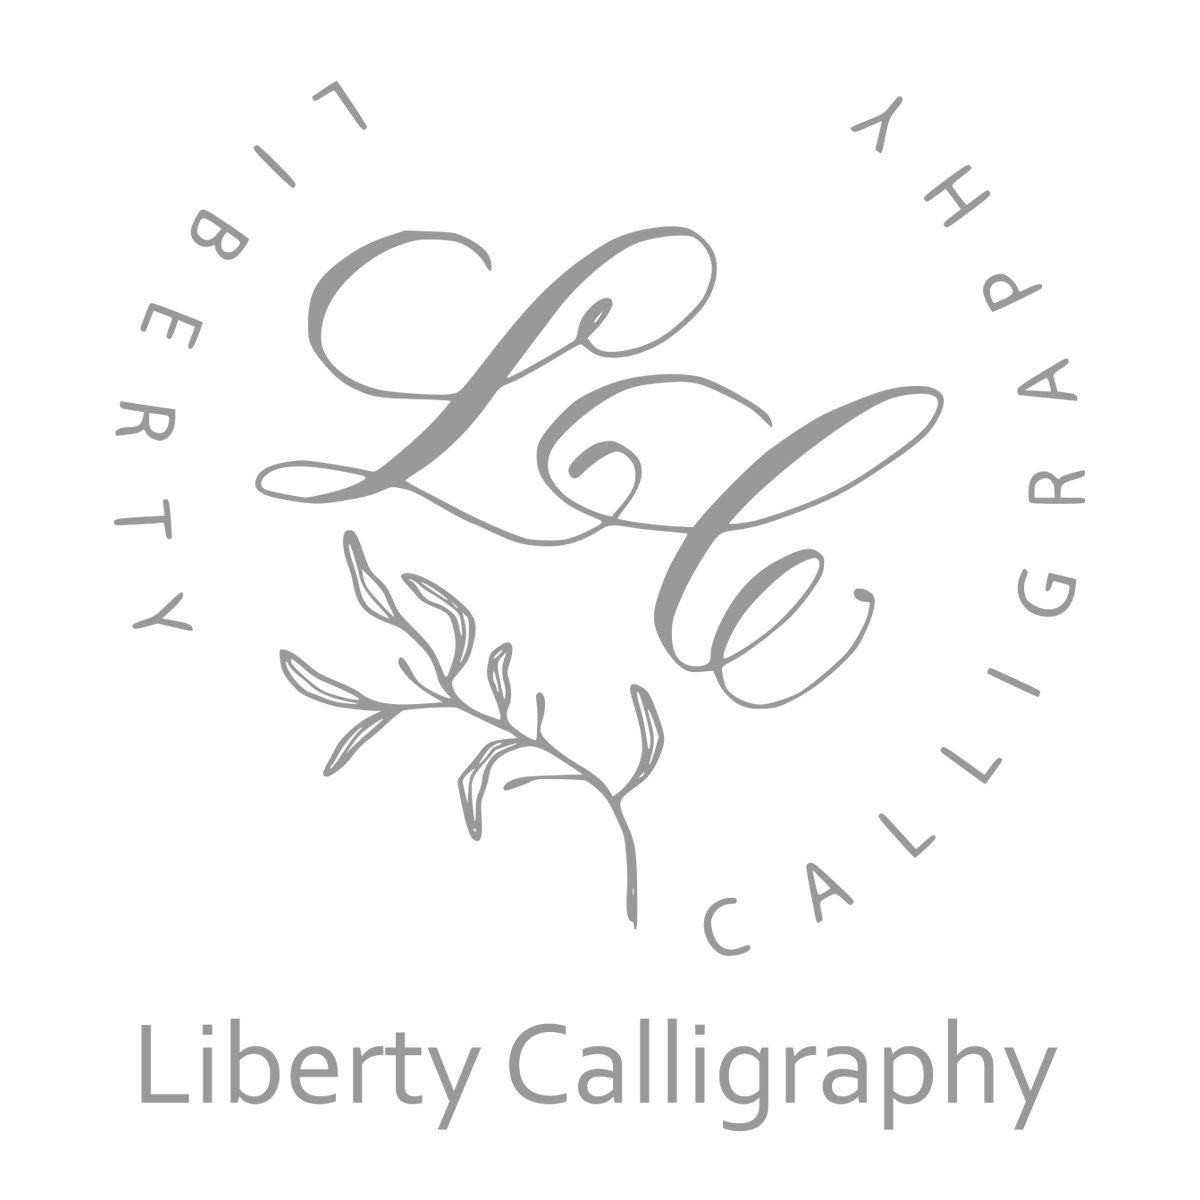 カリグラフィー用品店 Liberty Calligraphy Online Store リバティカリグラフィー